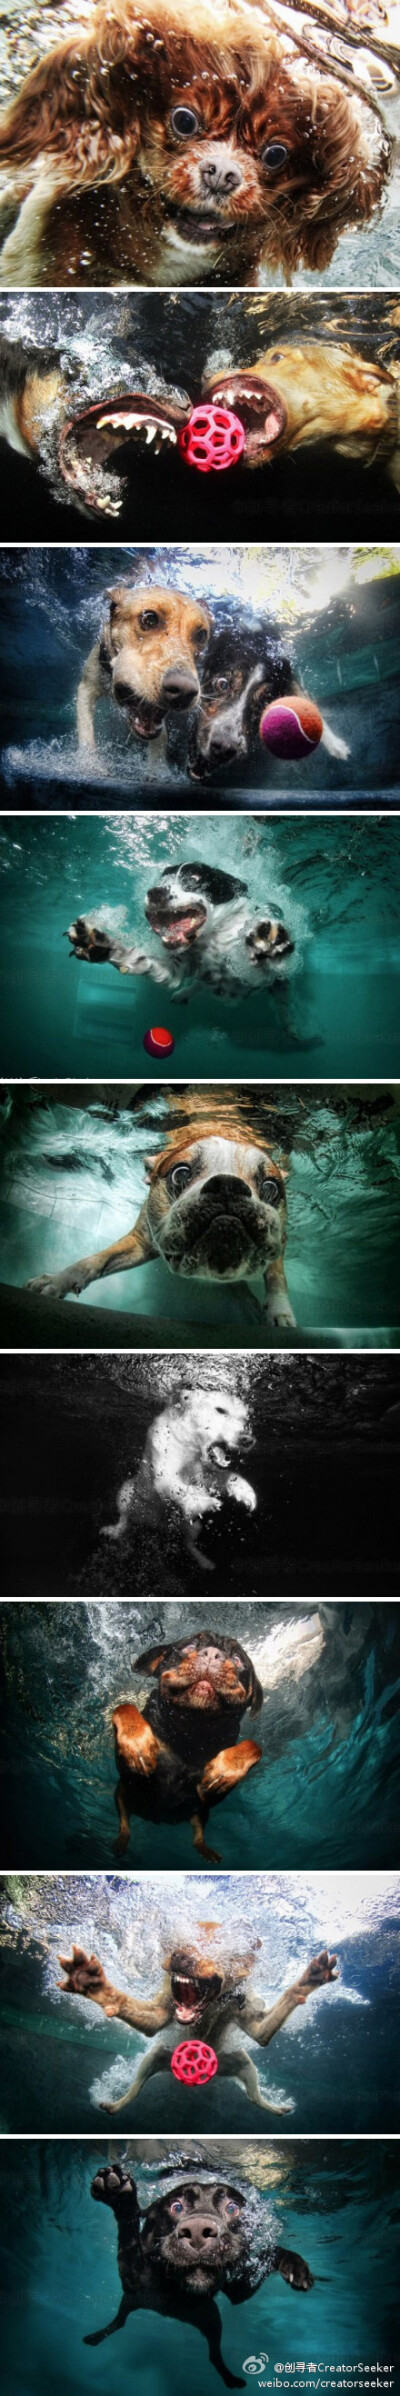 [3/21/2012-1] 摄影师seth喜欢拍摄小动物。他把小狗放到游泳池中并拍摄他们刚入水时的那一霎那。这组照片显得十分有爱，您觉得呢？ 作者Seth Casteel 来源 Fubiz 欢迎关注 @创寻者CreatorSeeker